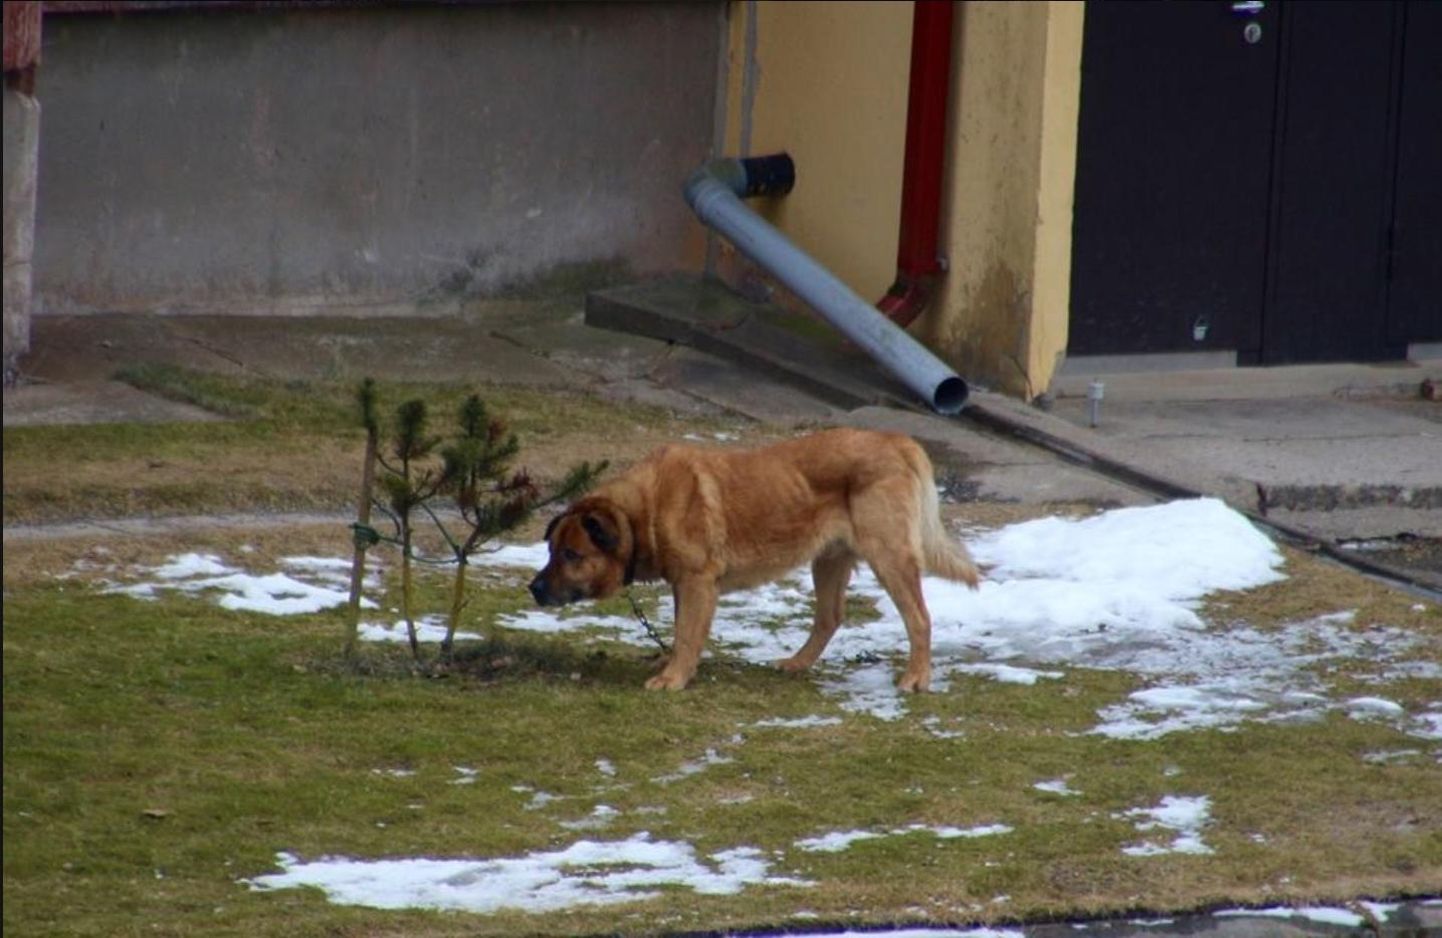 Pildil olev koer 28. märtsi õhtul poissi taga ei ajanud, sest oli samal ajal koduõues ketis.